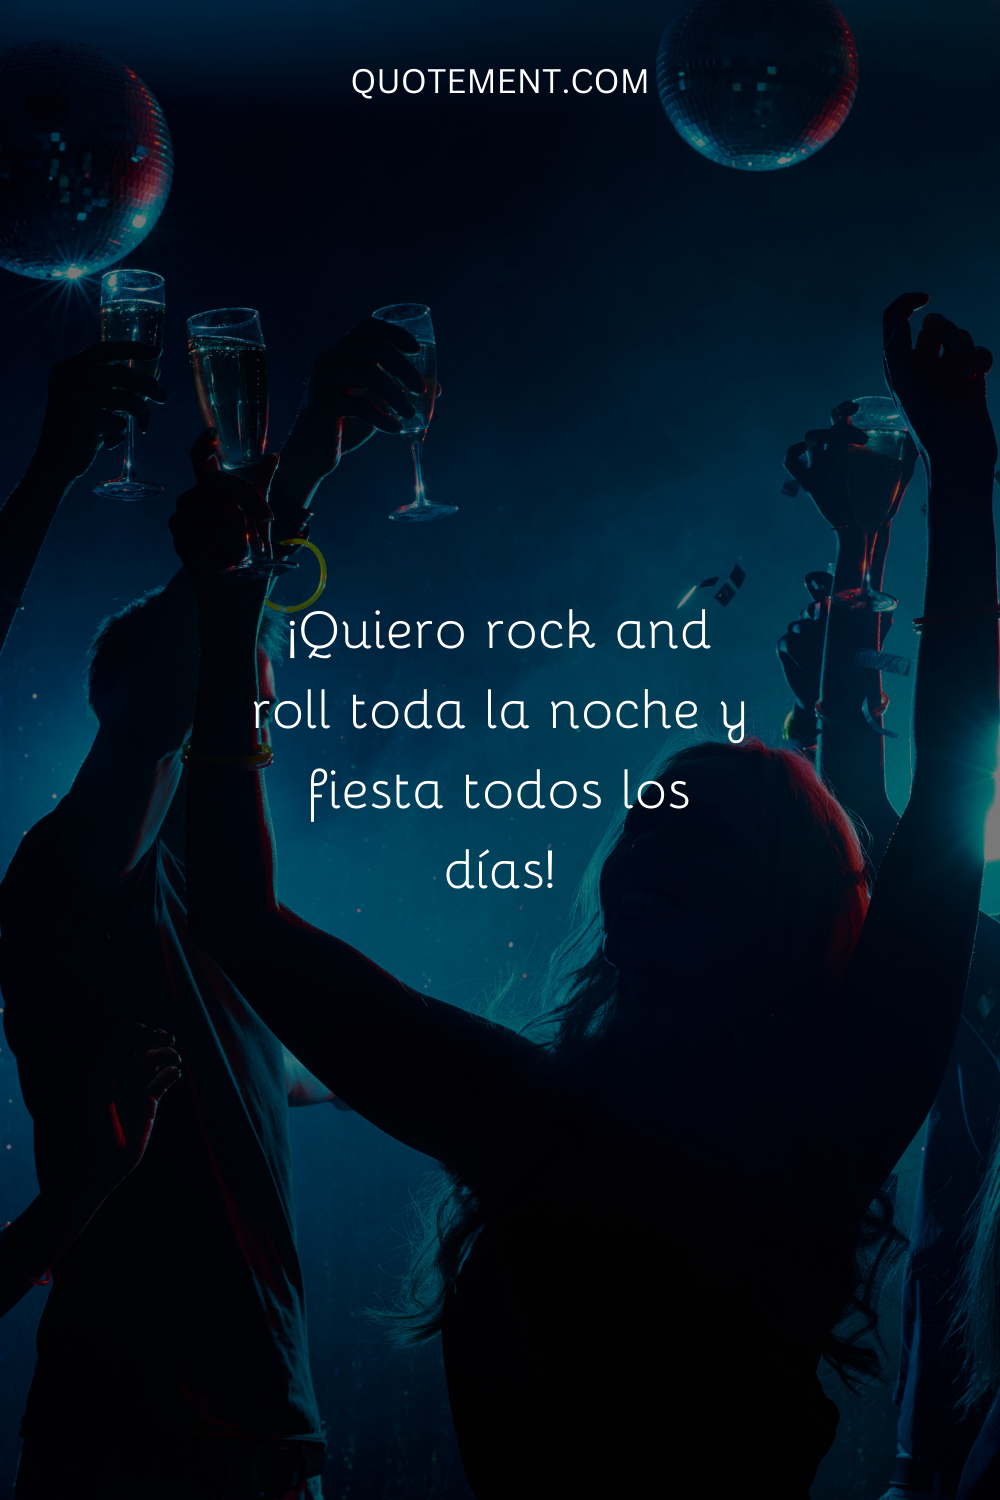 Quiero rock and roll toda la noche y fiesta todos los días